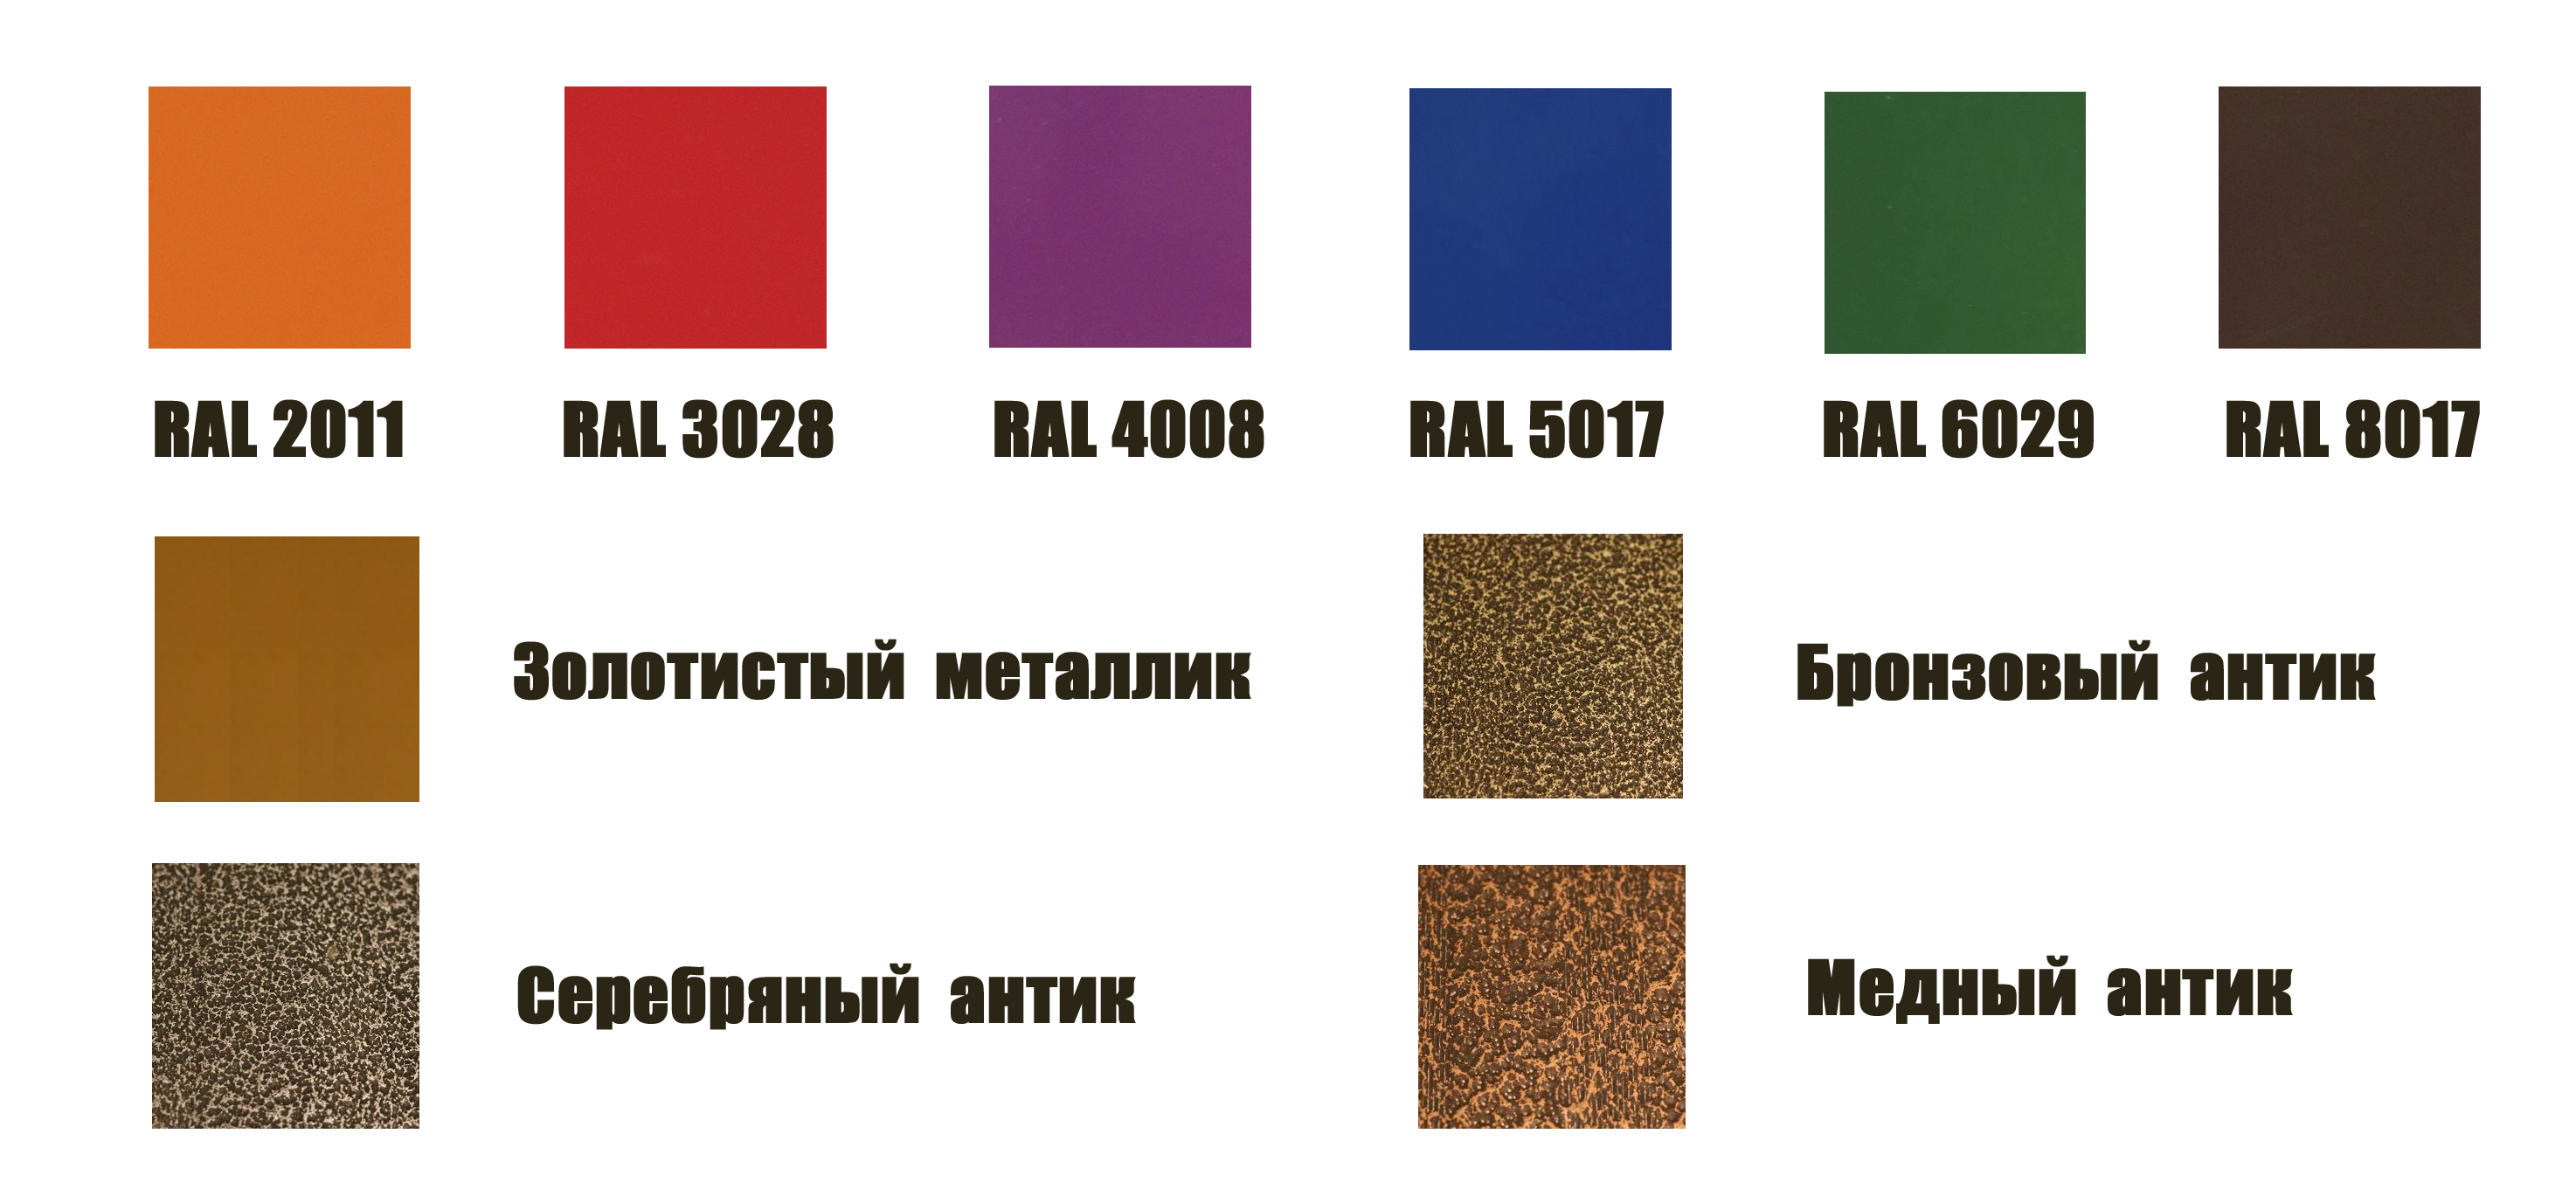 Каталог популярных цветов по RAL для покраски оцинкованных клумб DeltaPark от компании Удачные Теплицы